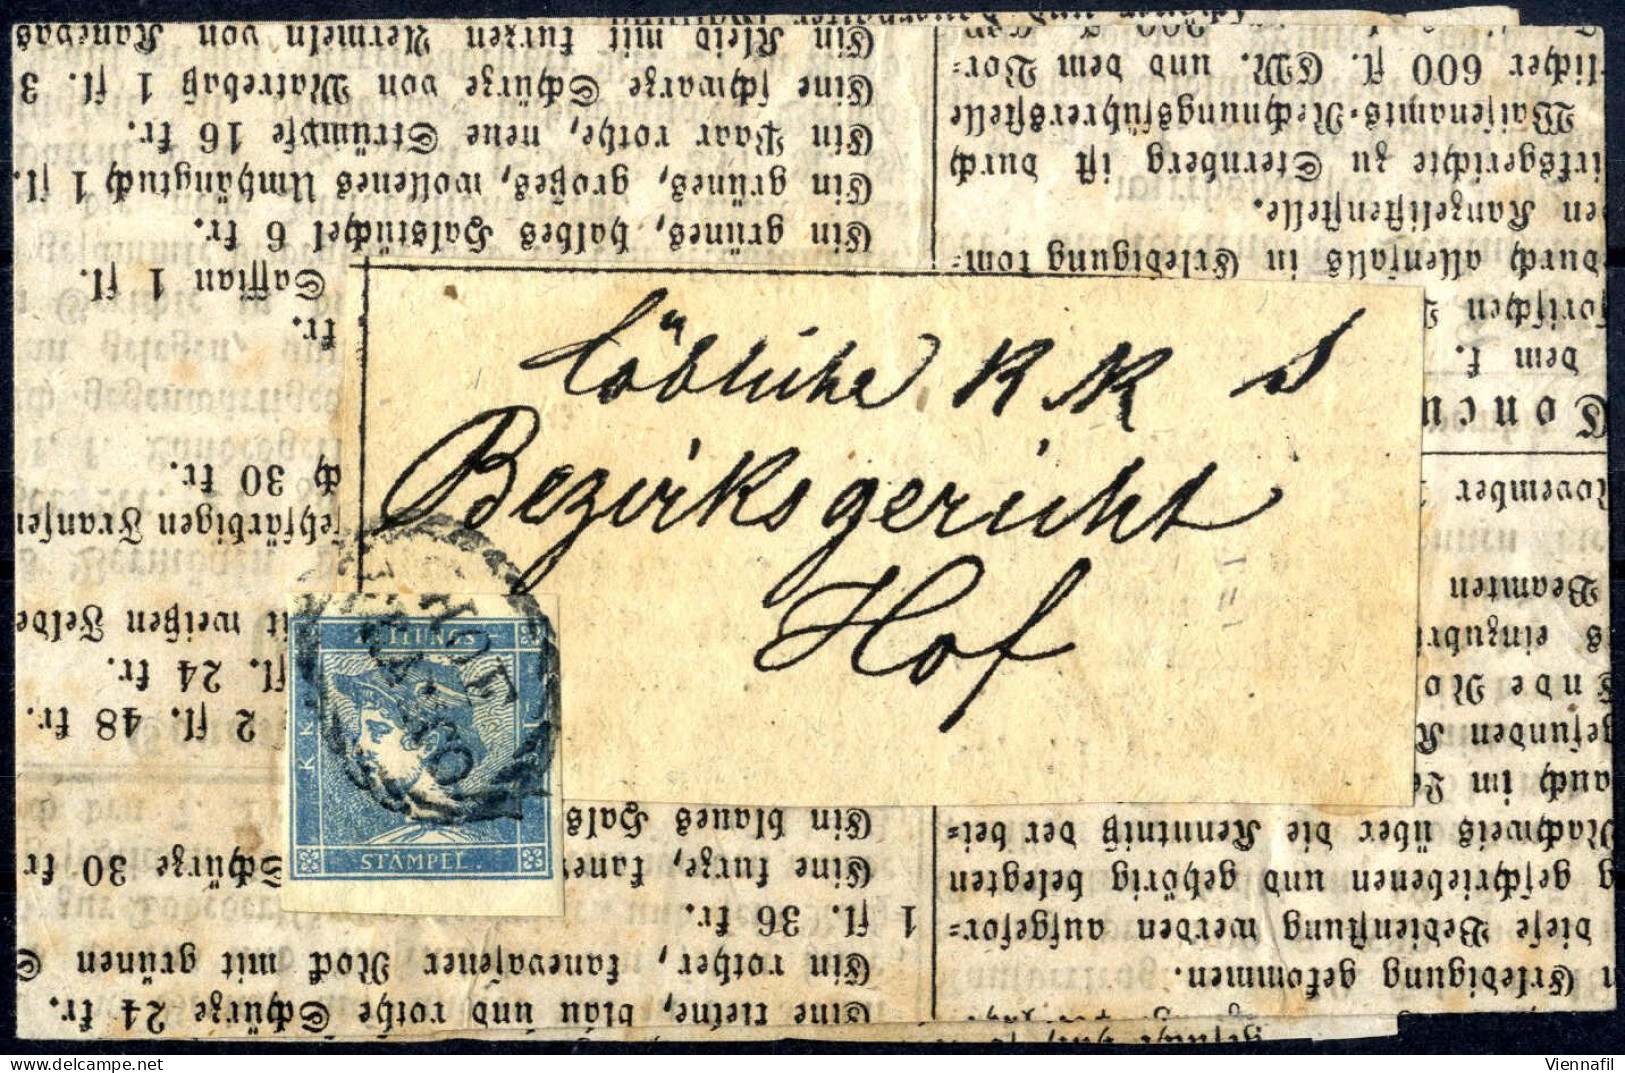 Cover 1851, Blauer Merkur 0,6 Kreuzer In Type IIc Auf Kompletter Schleife Entwertet Mit Dem Zierovalstempel HOF / FRANCO - Journaux